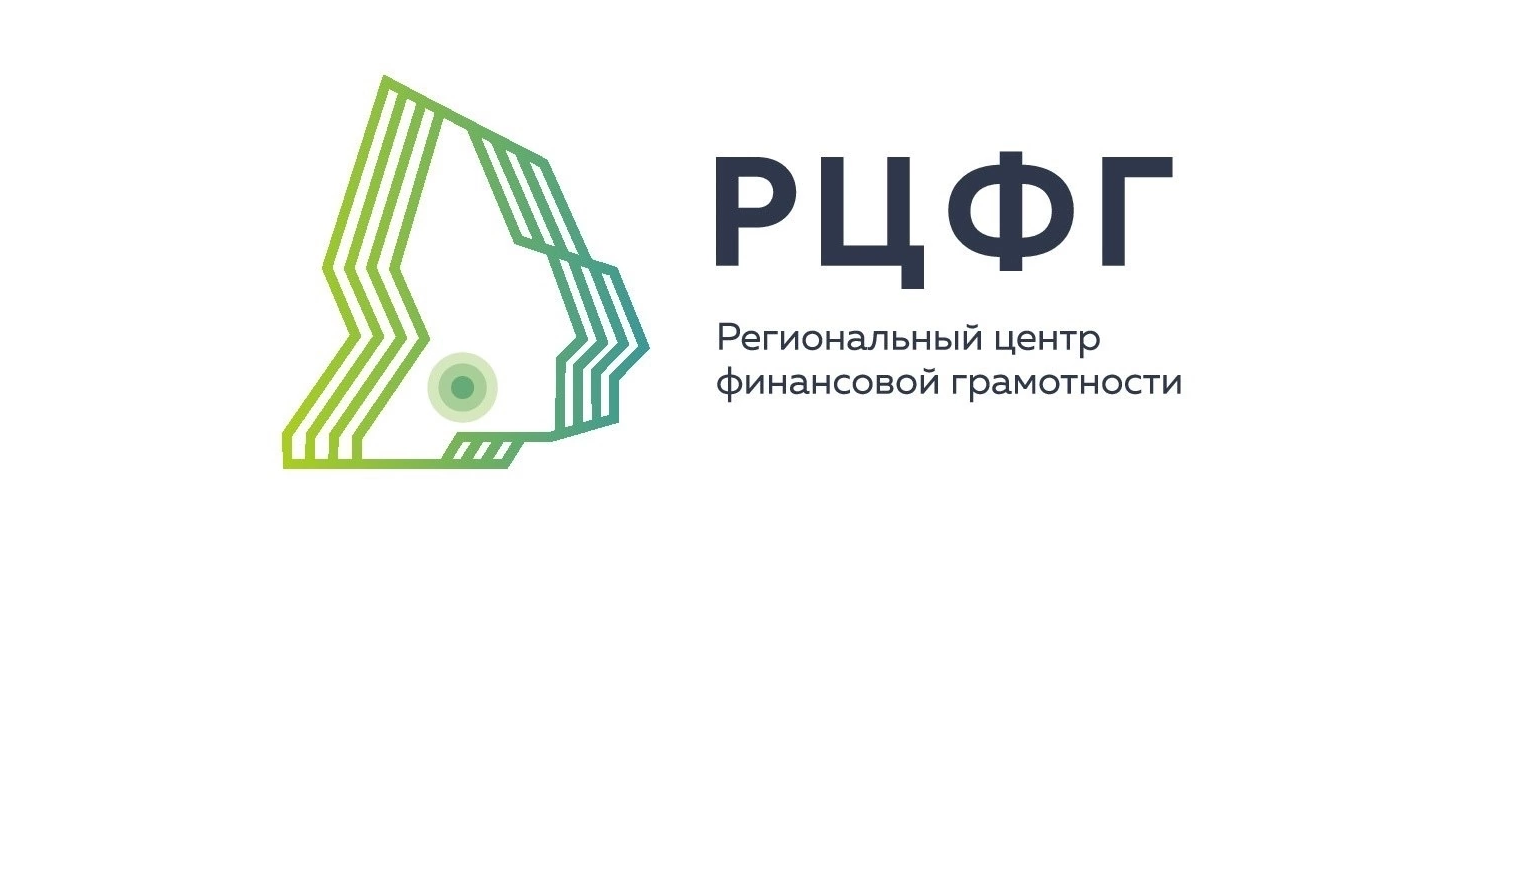 С 1 сентября 2022 г. на базе ФГБОУ ВО «МГУ им. Н.П.Огарёва» начал функционировать Региональный центр финансовой грамотности населения.